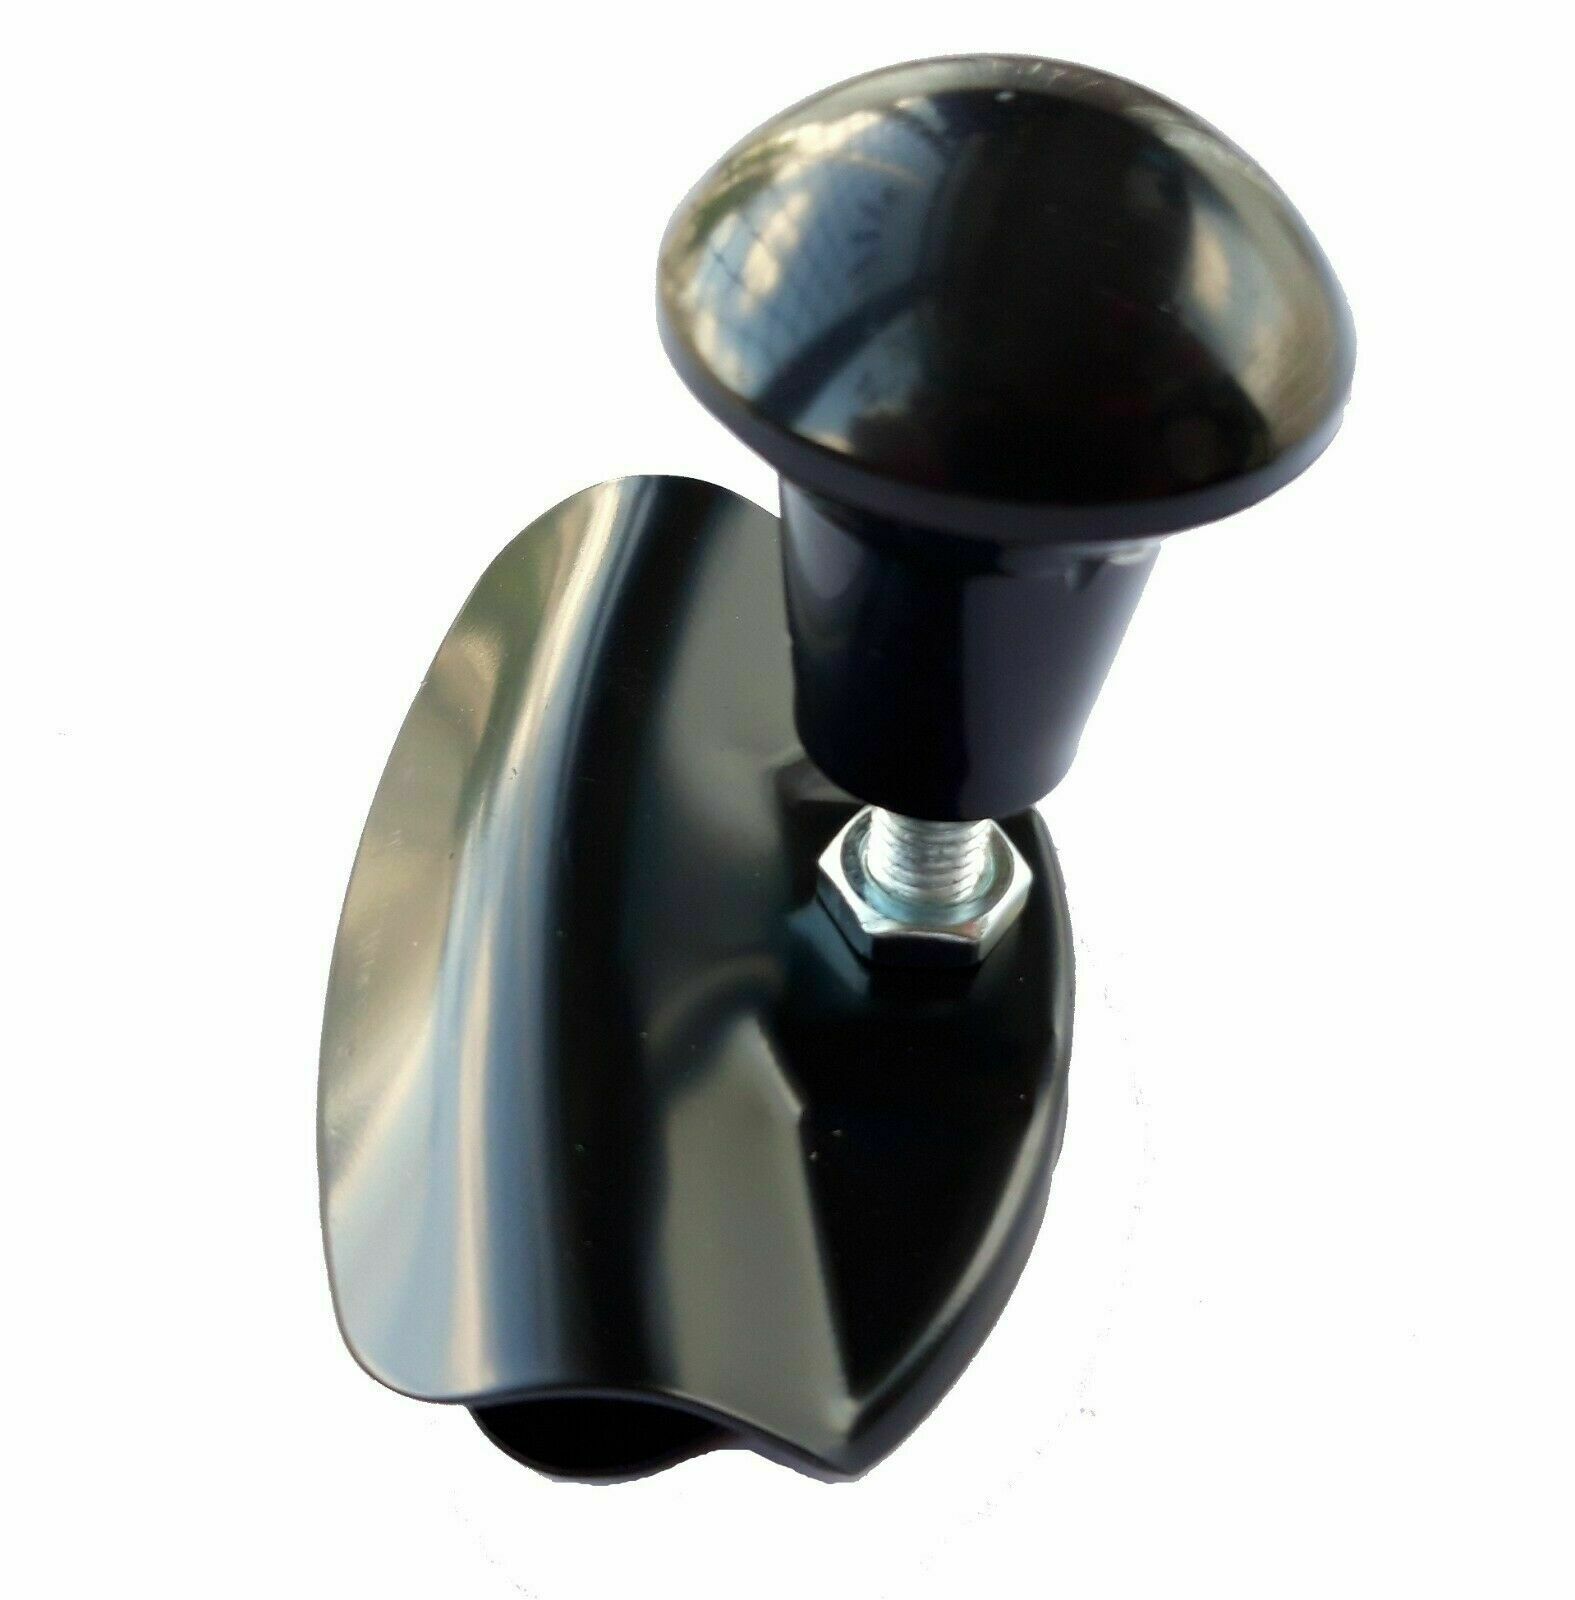 Lenkrad-Knopf, Spinner, Kugelgriff, All Ride Lenkradknopf Universal 4  Schraubenbefestigung. Die Kugel besteht aus schwarzem Kunststoff mit einer  Metallschraube im Inneren.